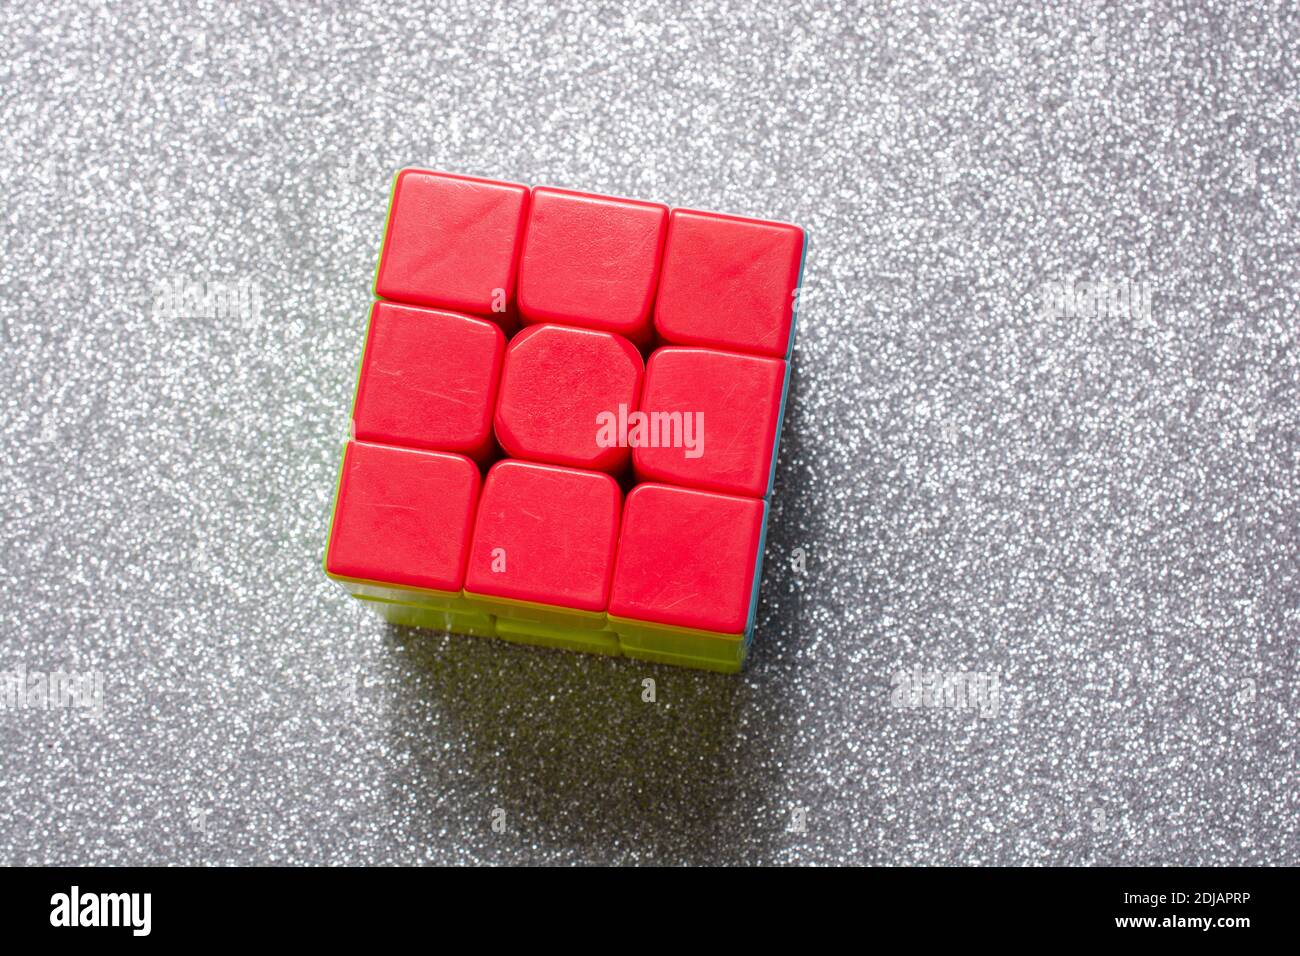 Ein gelöster Rubik-Würfel auf einer grau glänzenden Oberfläche - Problemlösungskonzept Stockfoto